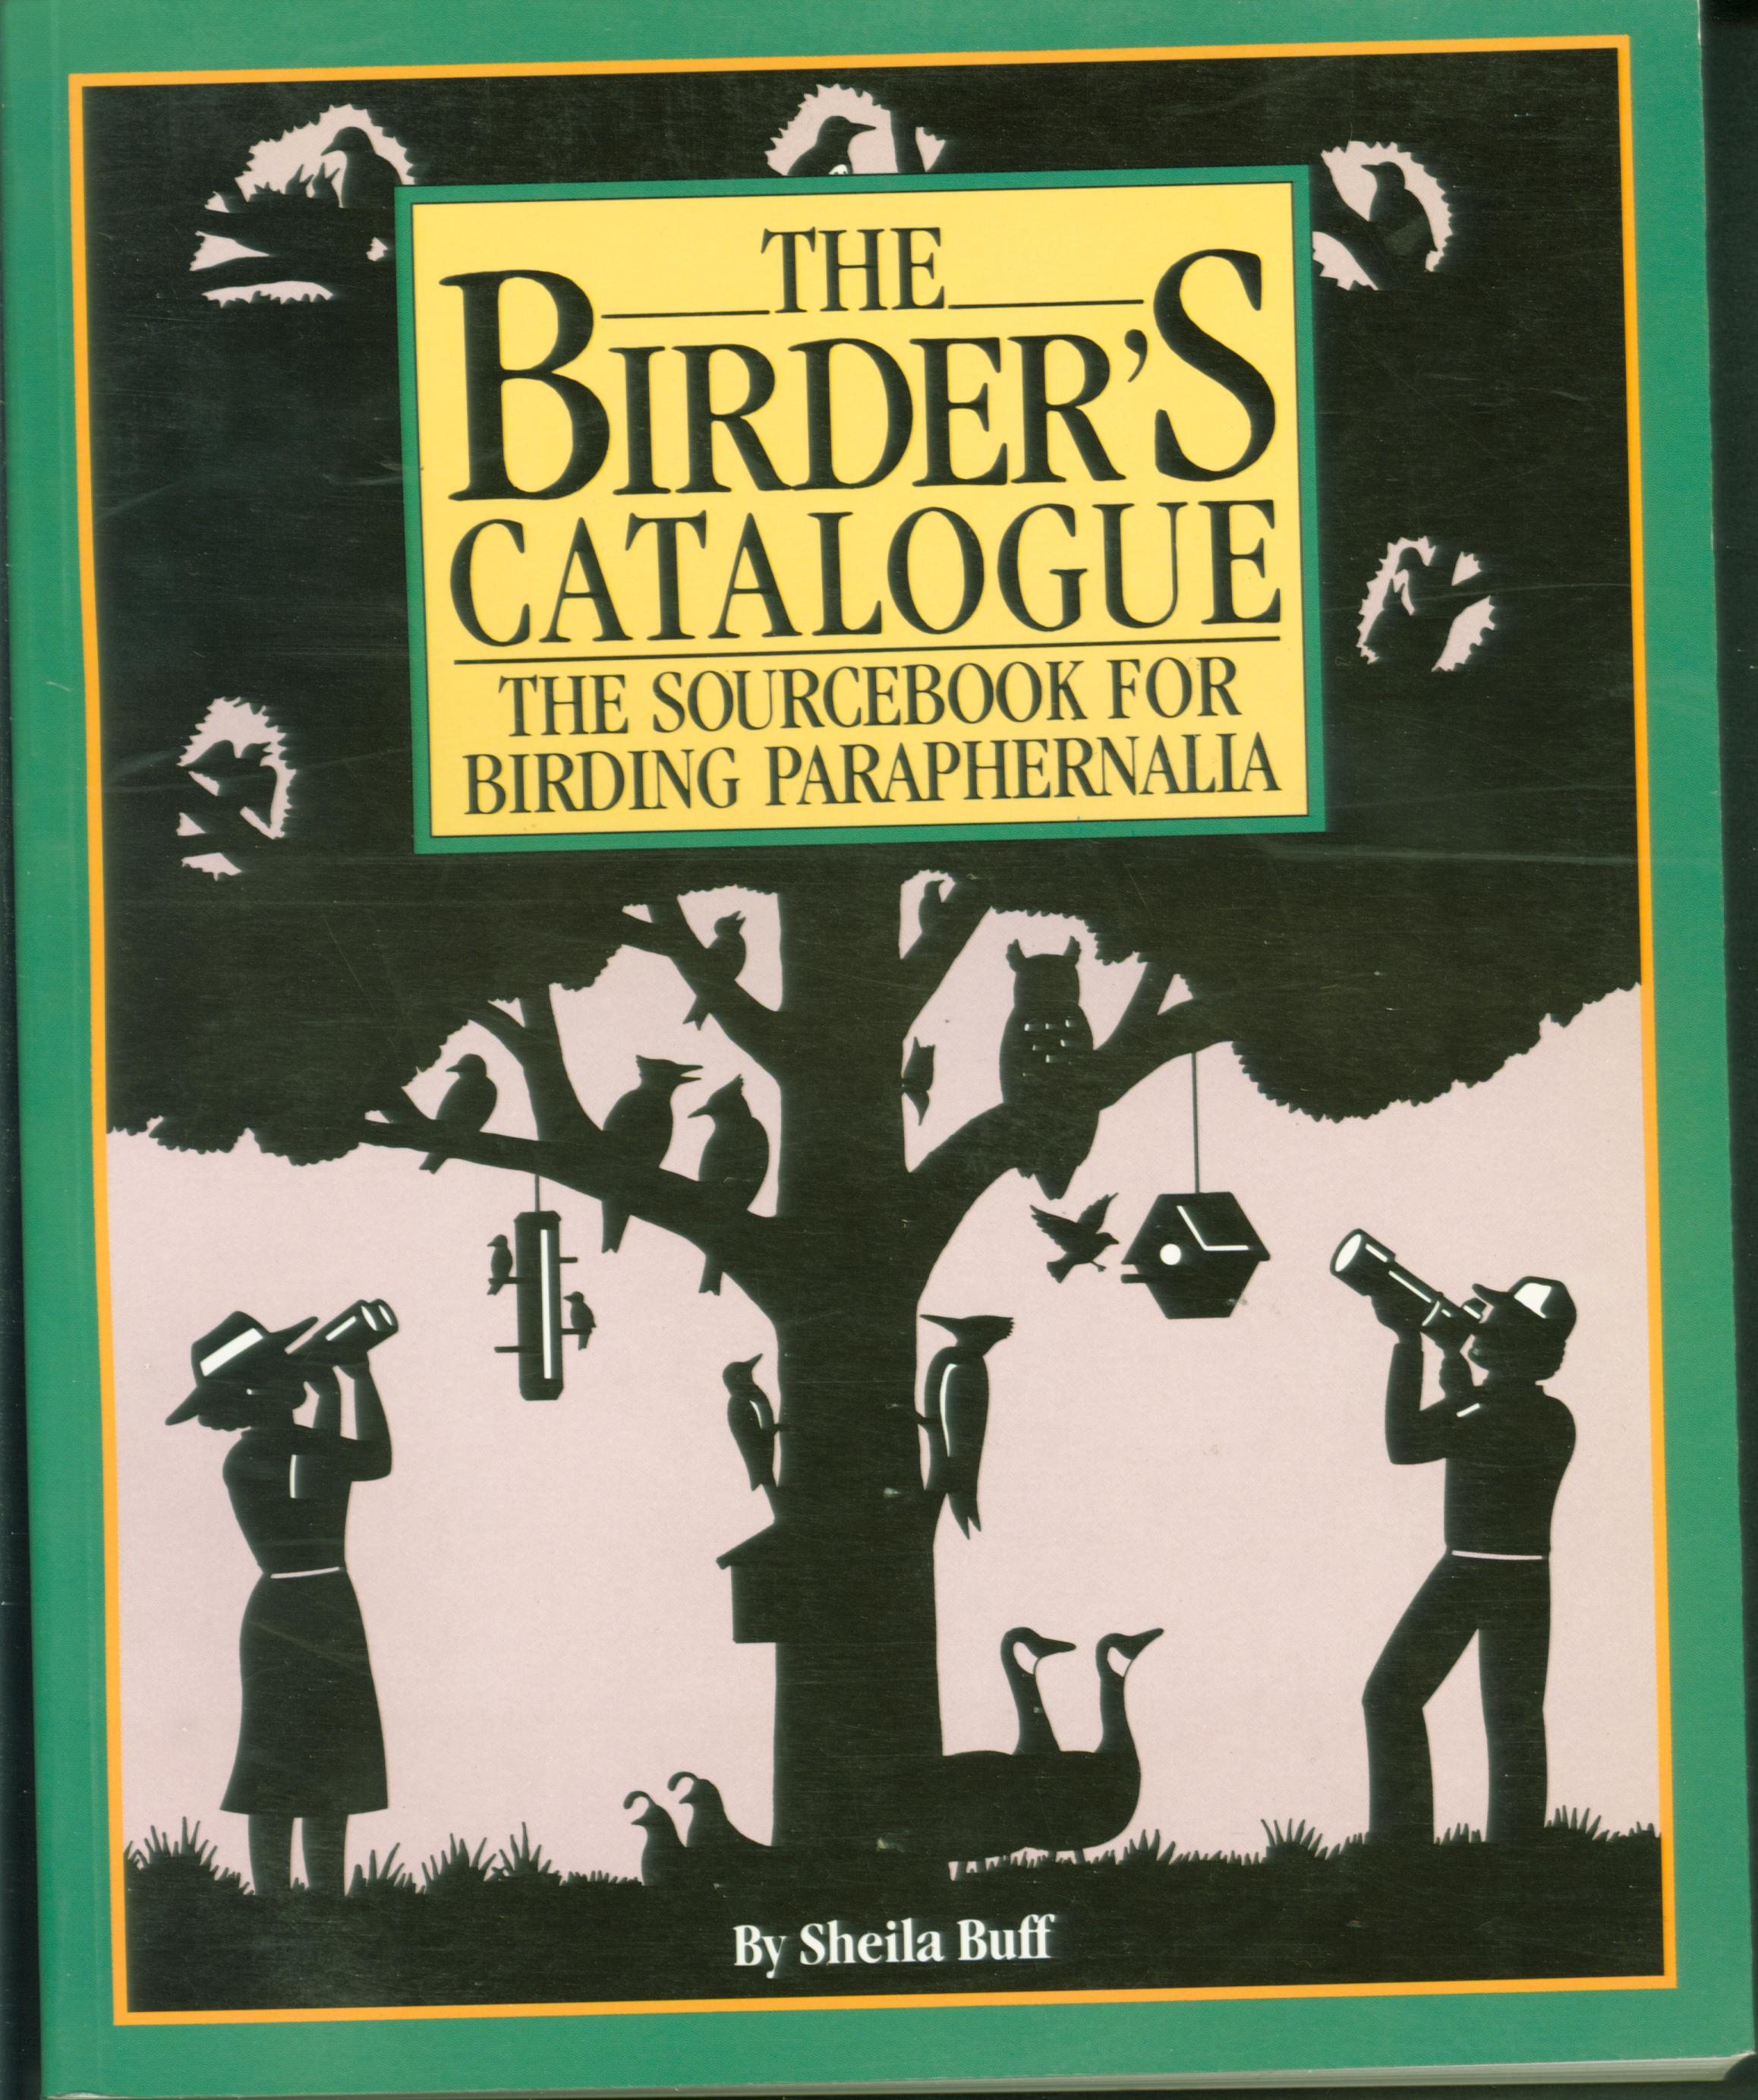 THE BIRDER'S CATALOGUE: the sourcebook for birding paraphernalia.